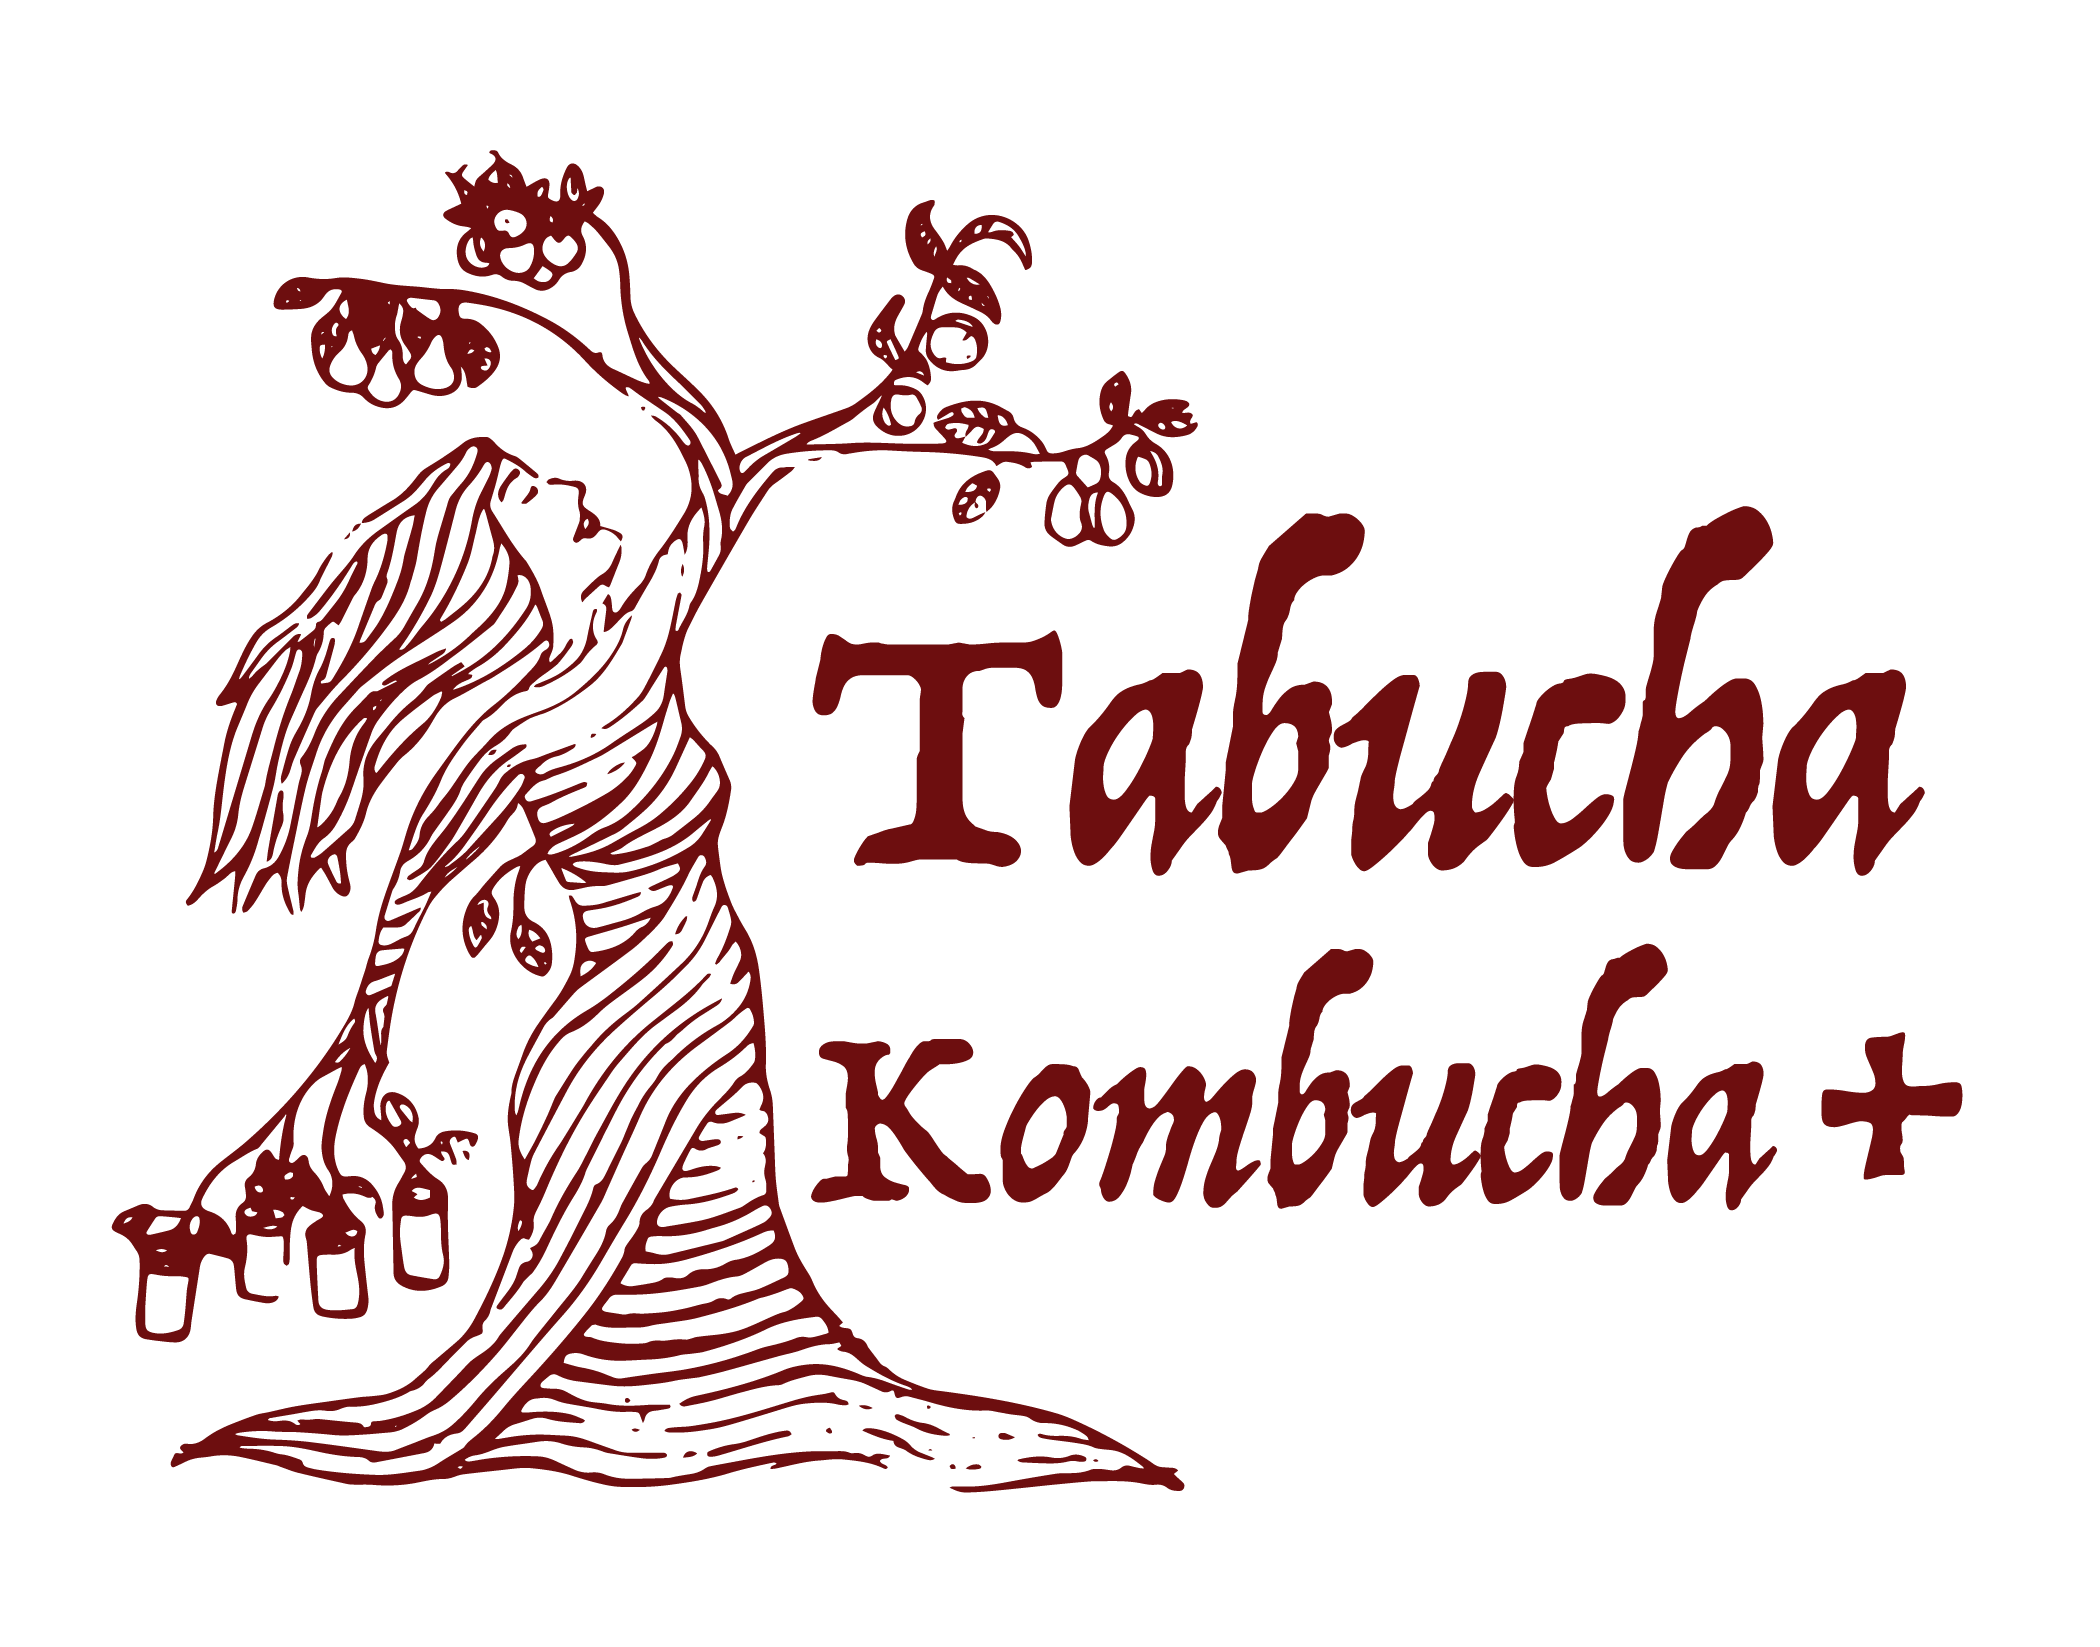 Tabucha Kombucha +